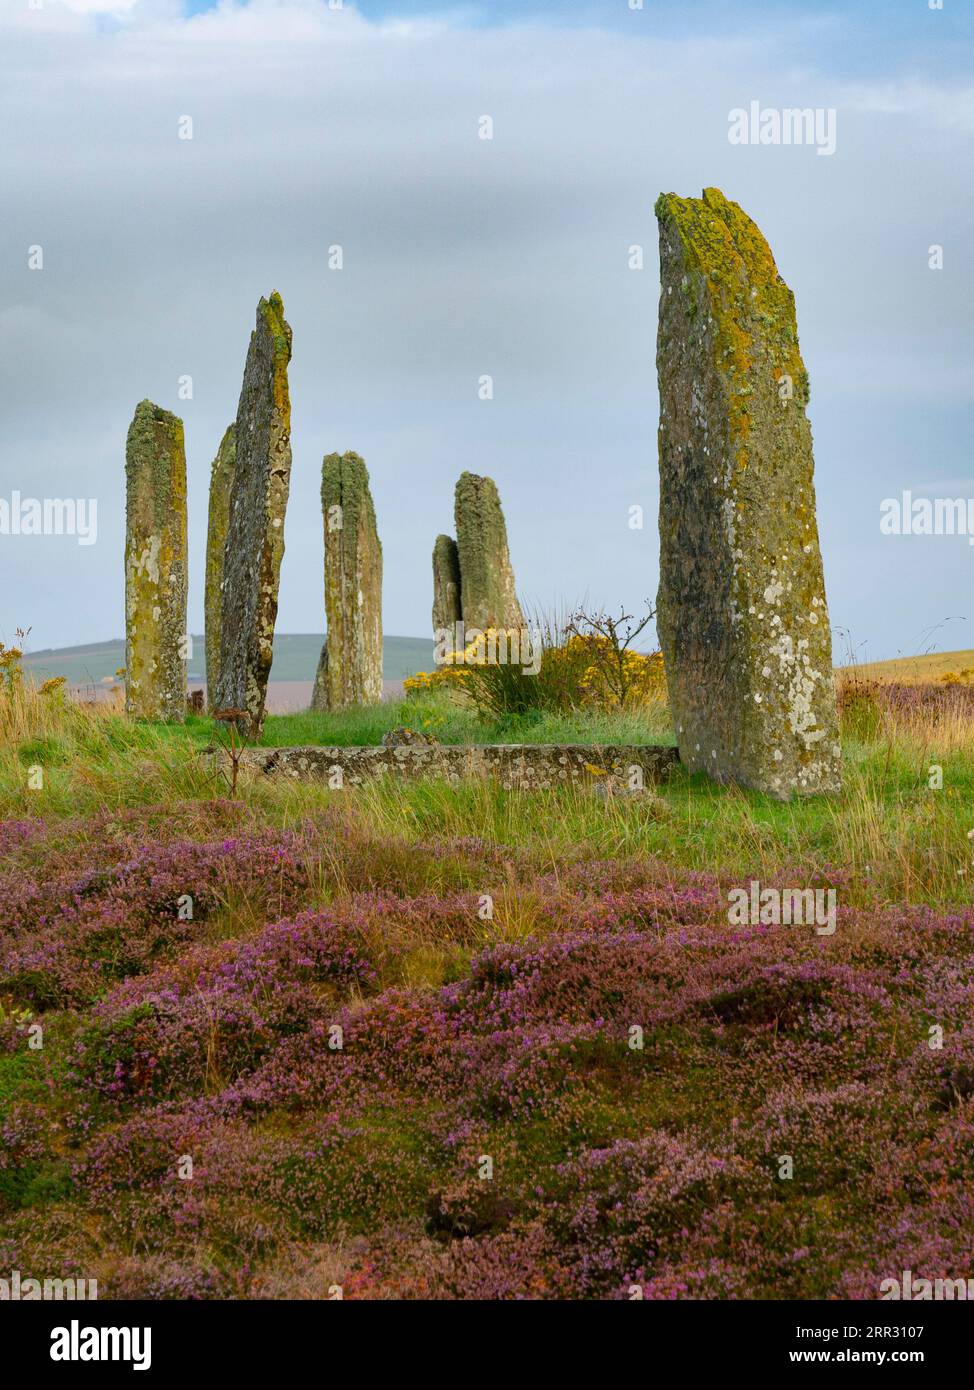 Lumière matinale à Ring of Brodgar henge néolithique et cercle de pierre à West Mainland, îles Orcades, Écosse, Royaume-Uni. Banque D'Images